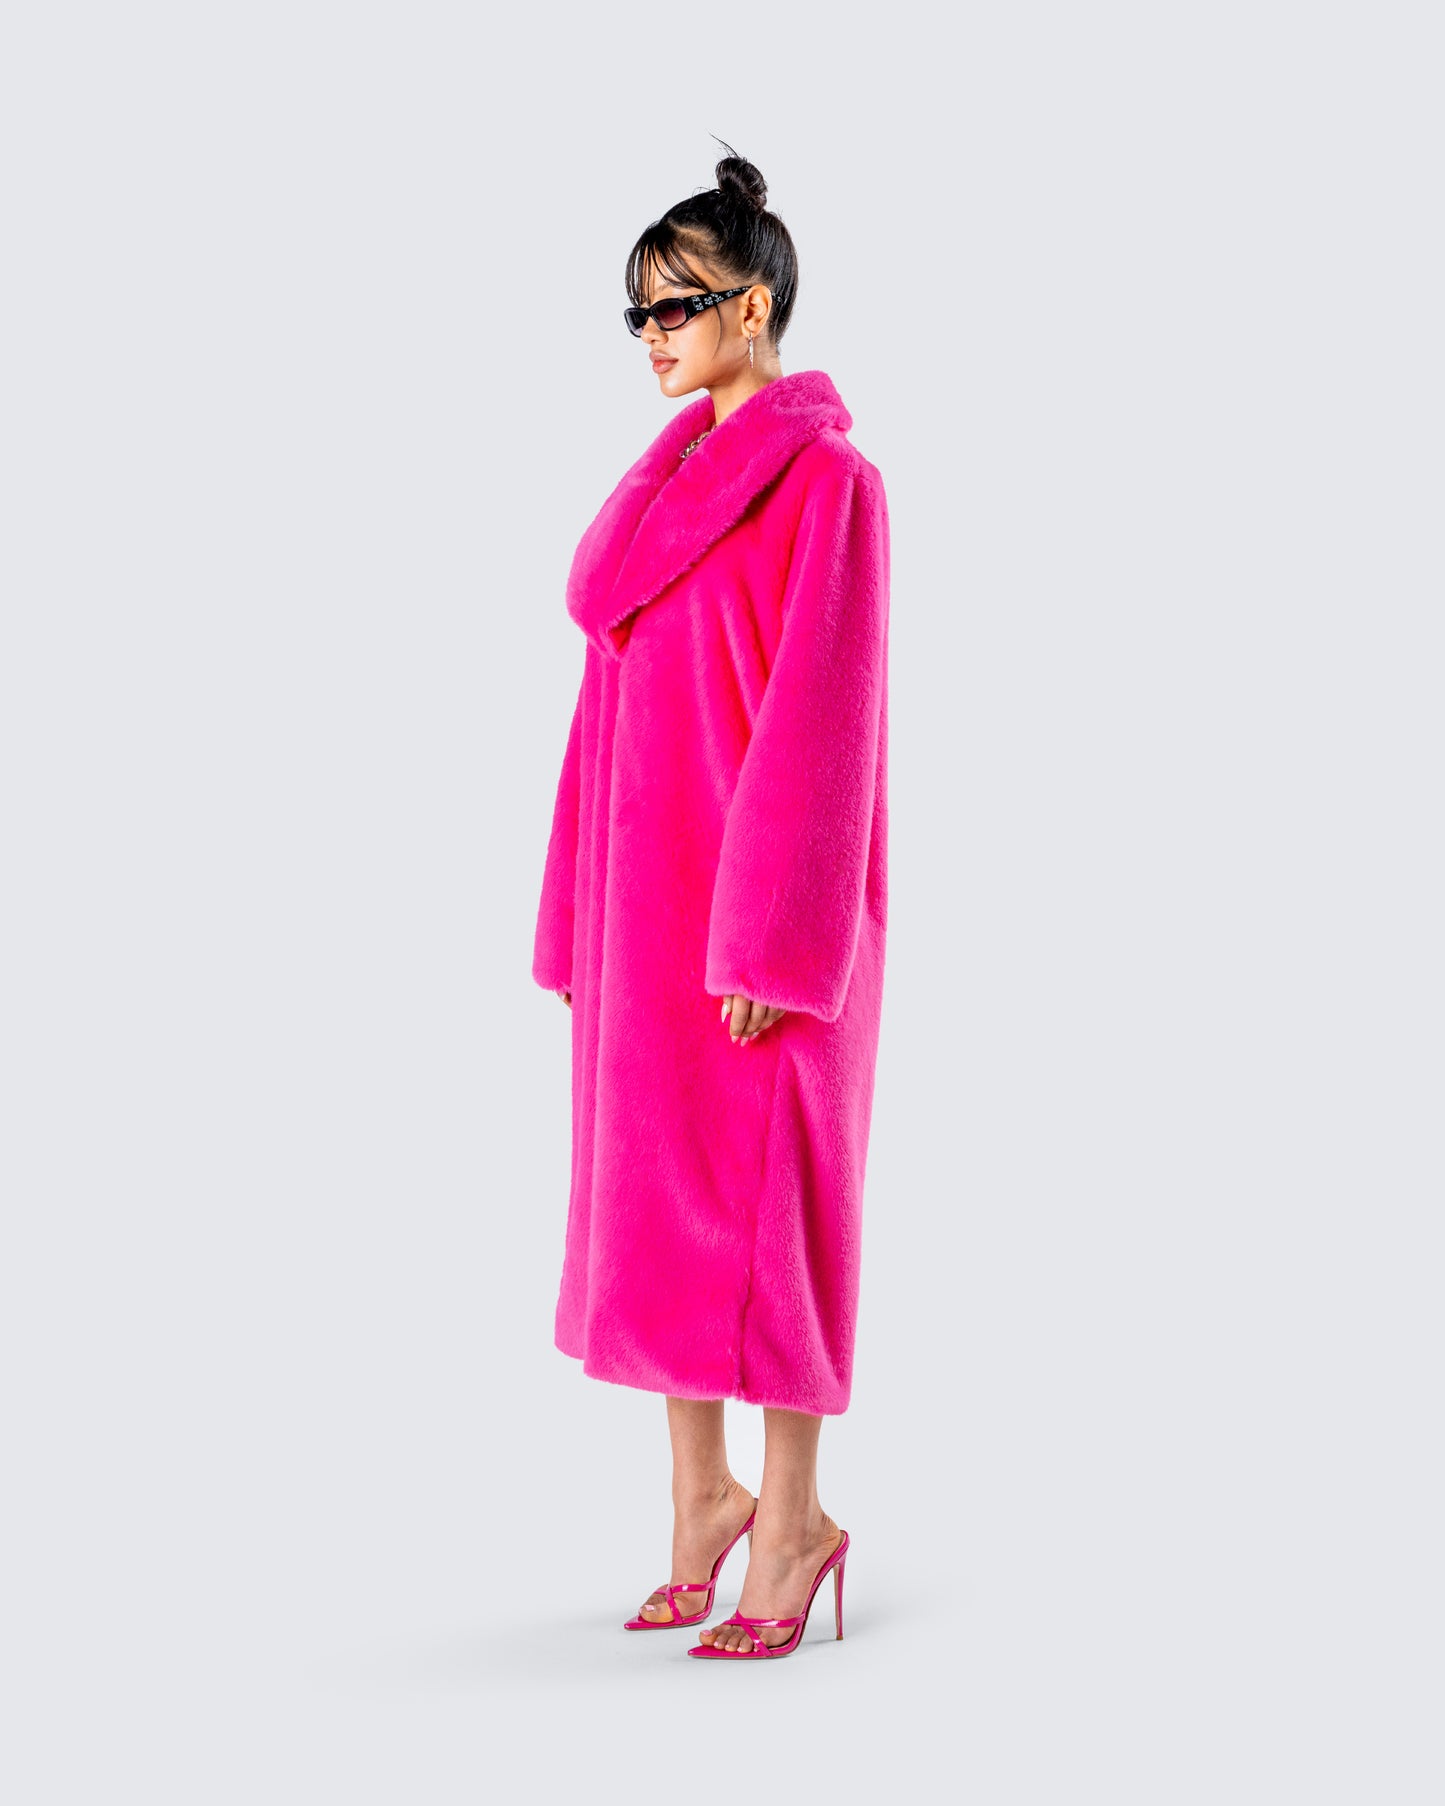 Dorinne Hot Pink Vegan Fur Coat